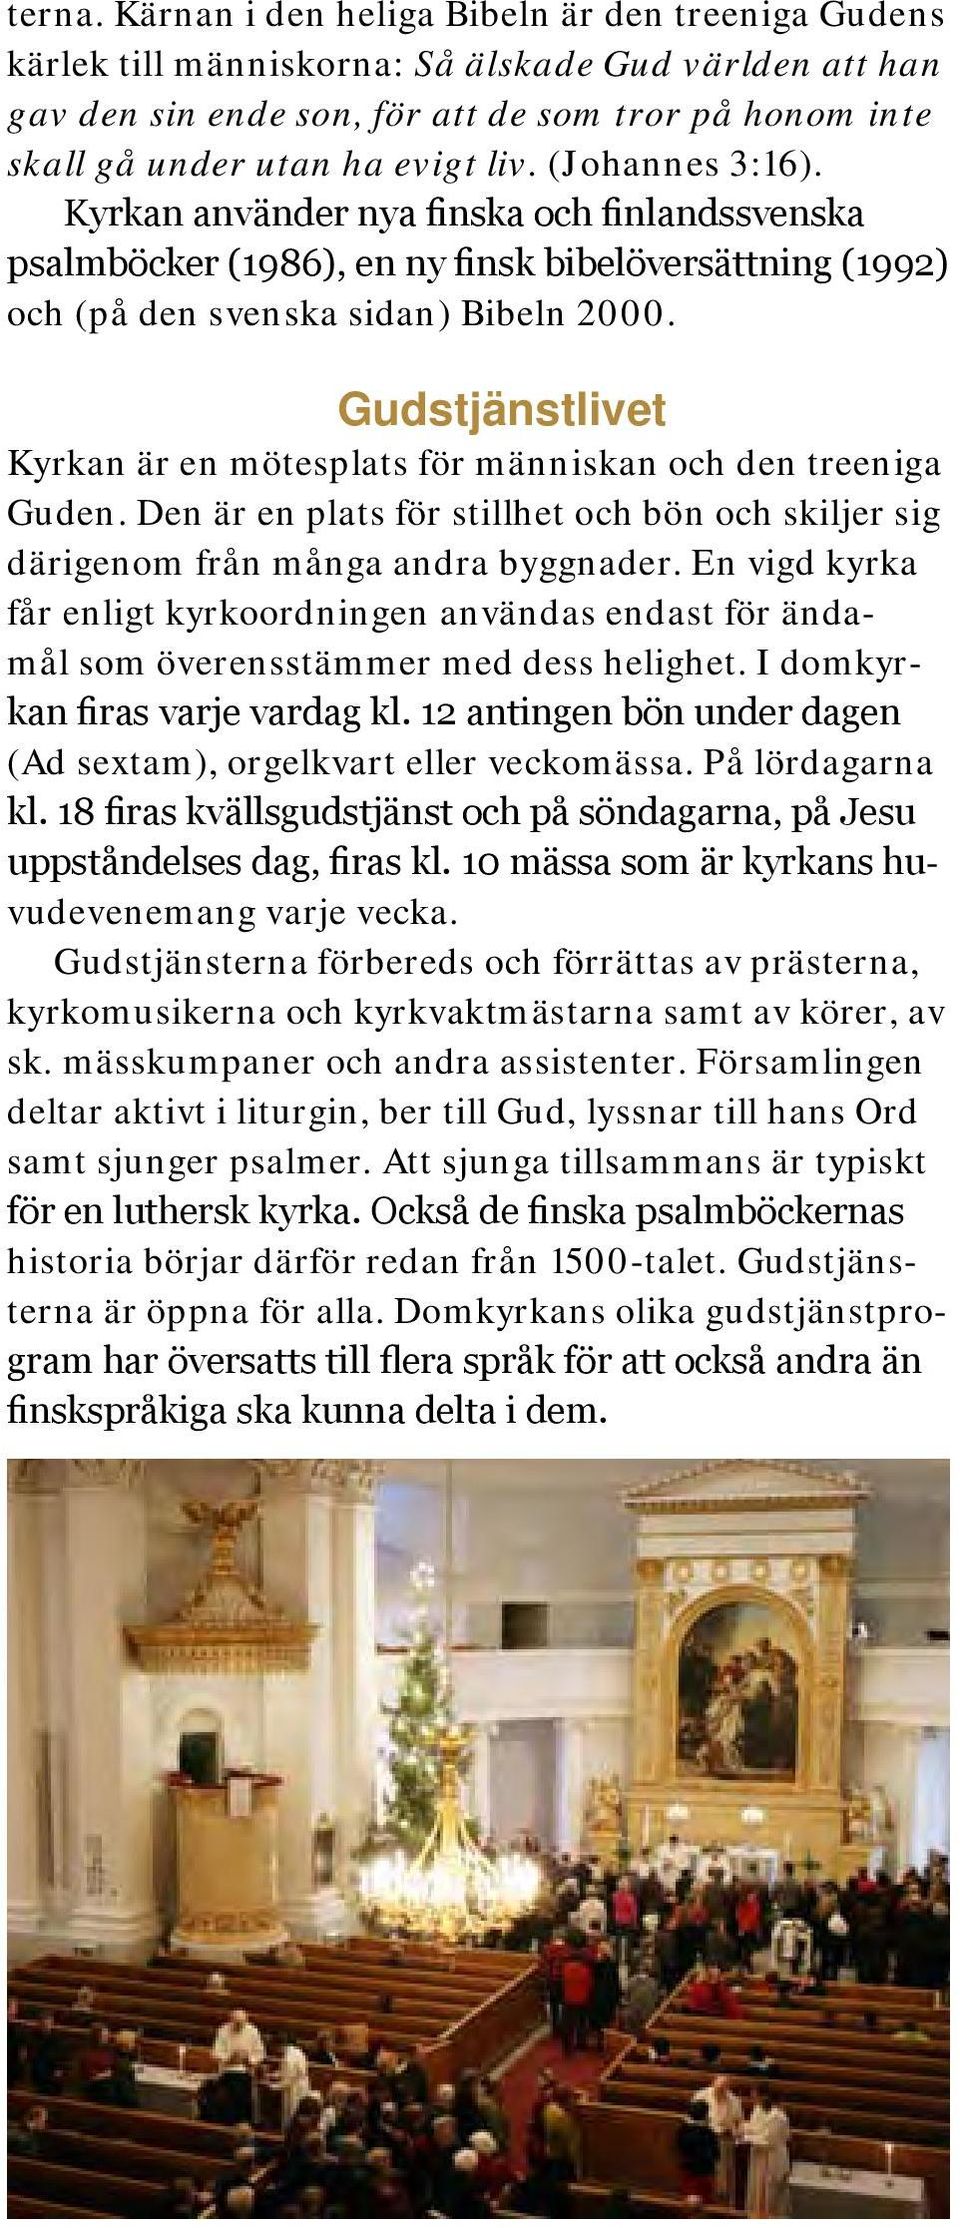 (Johannes 3:16). Kyrkan använder nya finska och finlandssvenska psalmböcker (1986), en ny finsk bibelöversättning (1992) och (på den svenska sidan) Bibeln 2000.